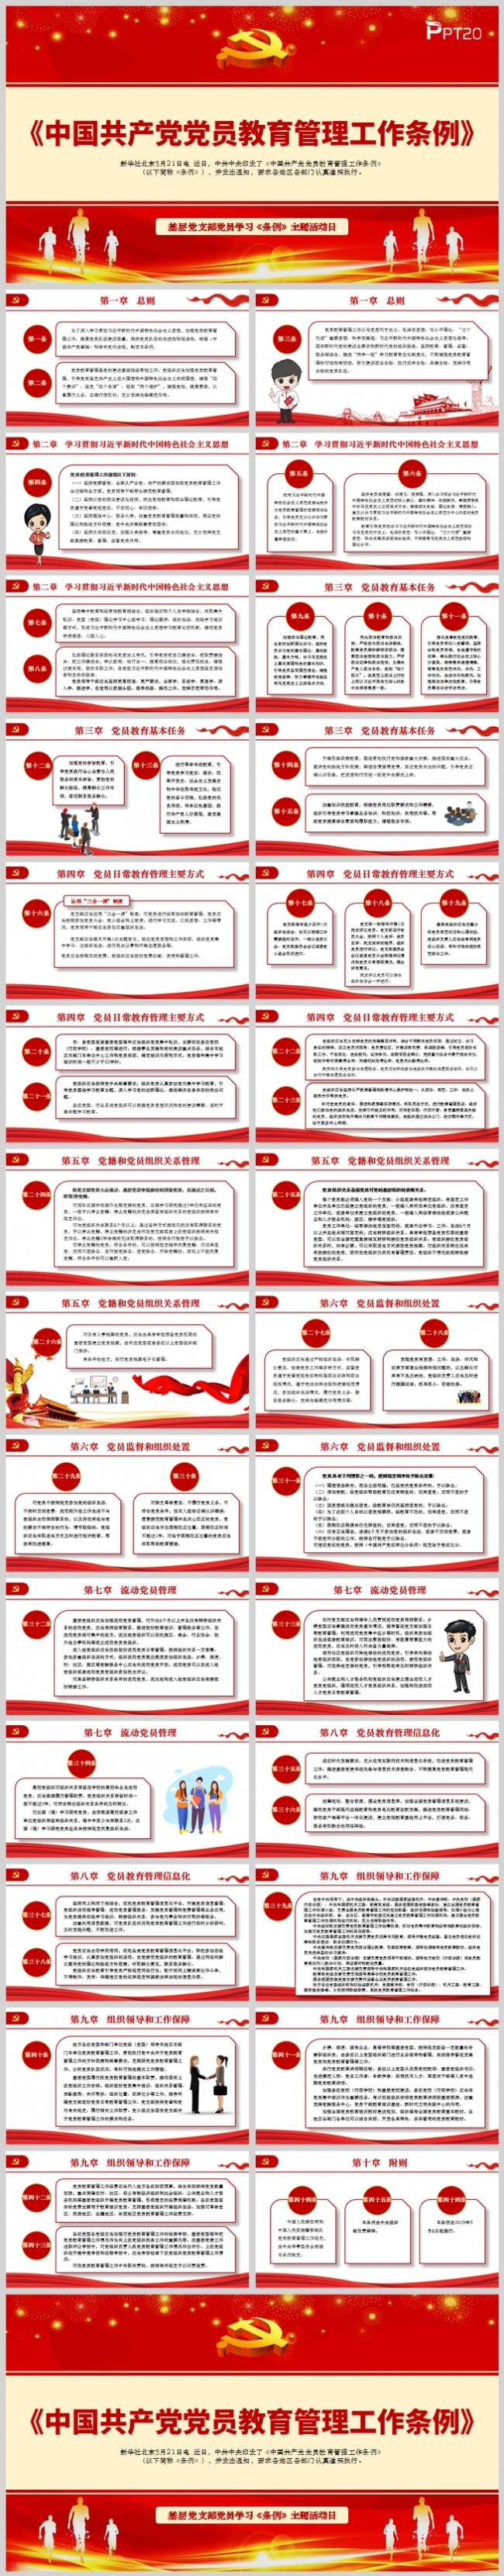 《中国共产党党员教育管理工作条例》PPT模板